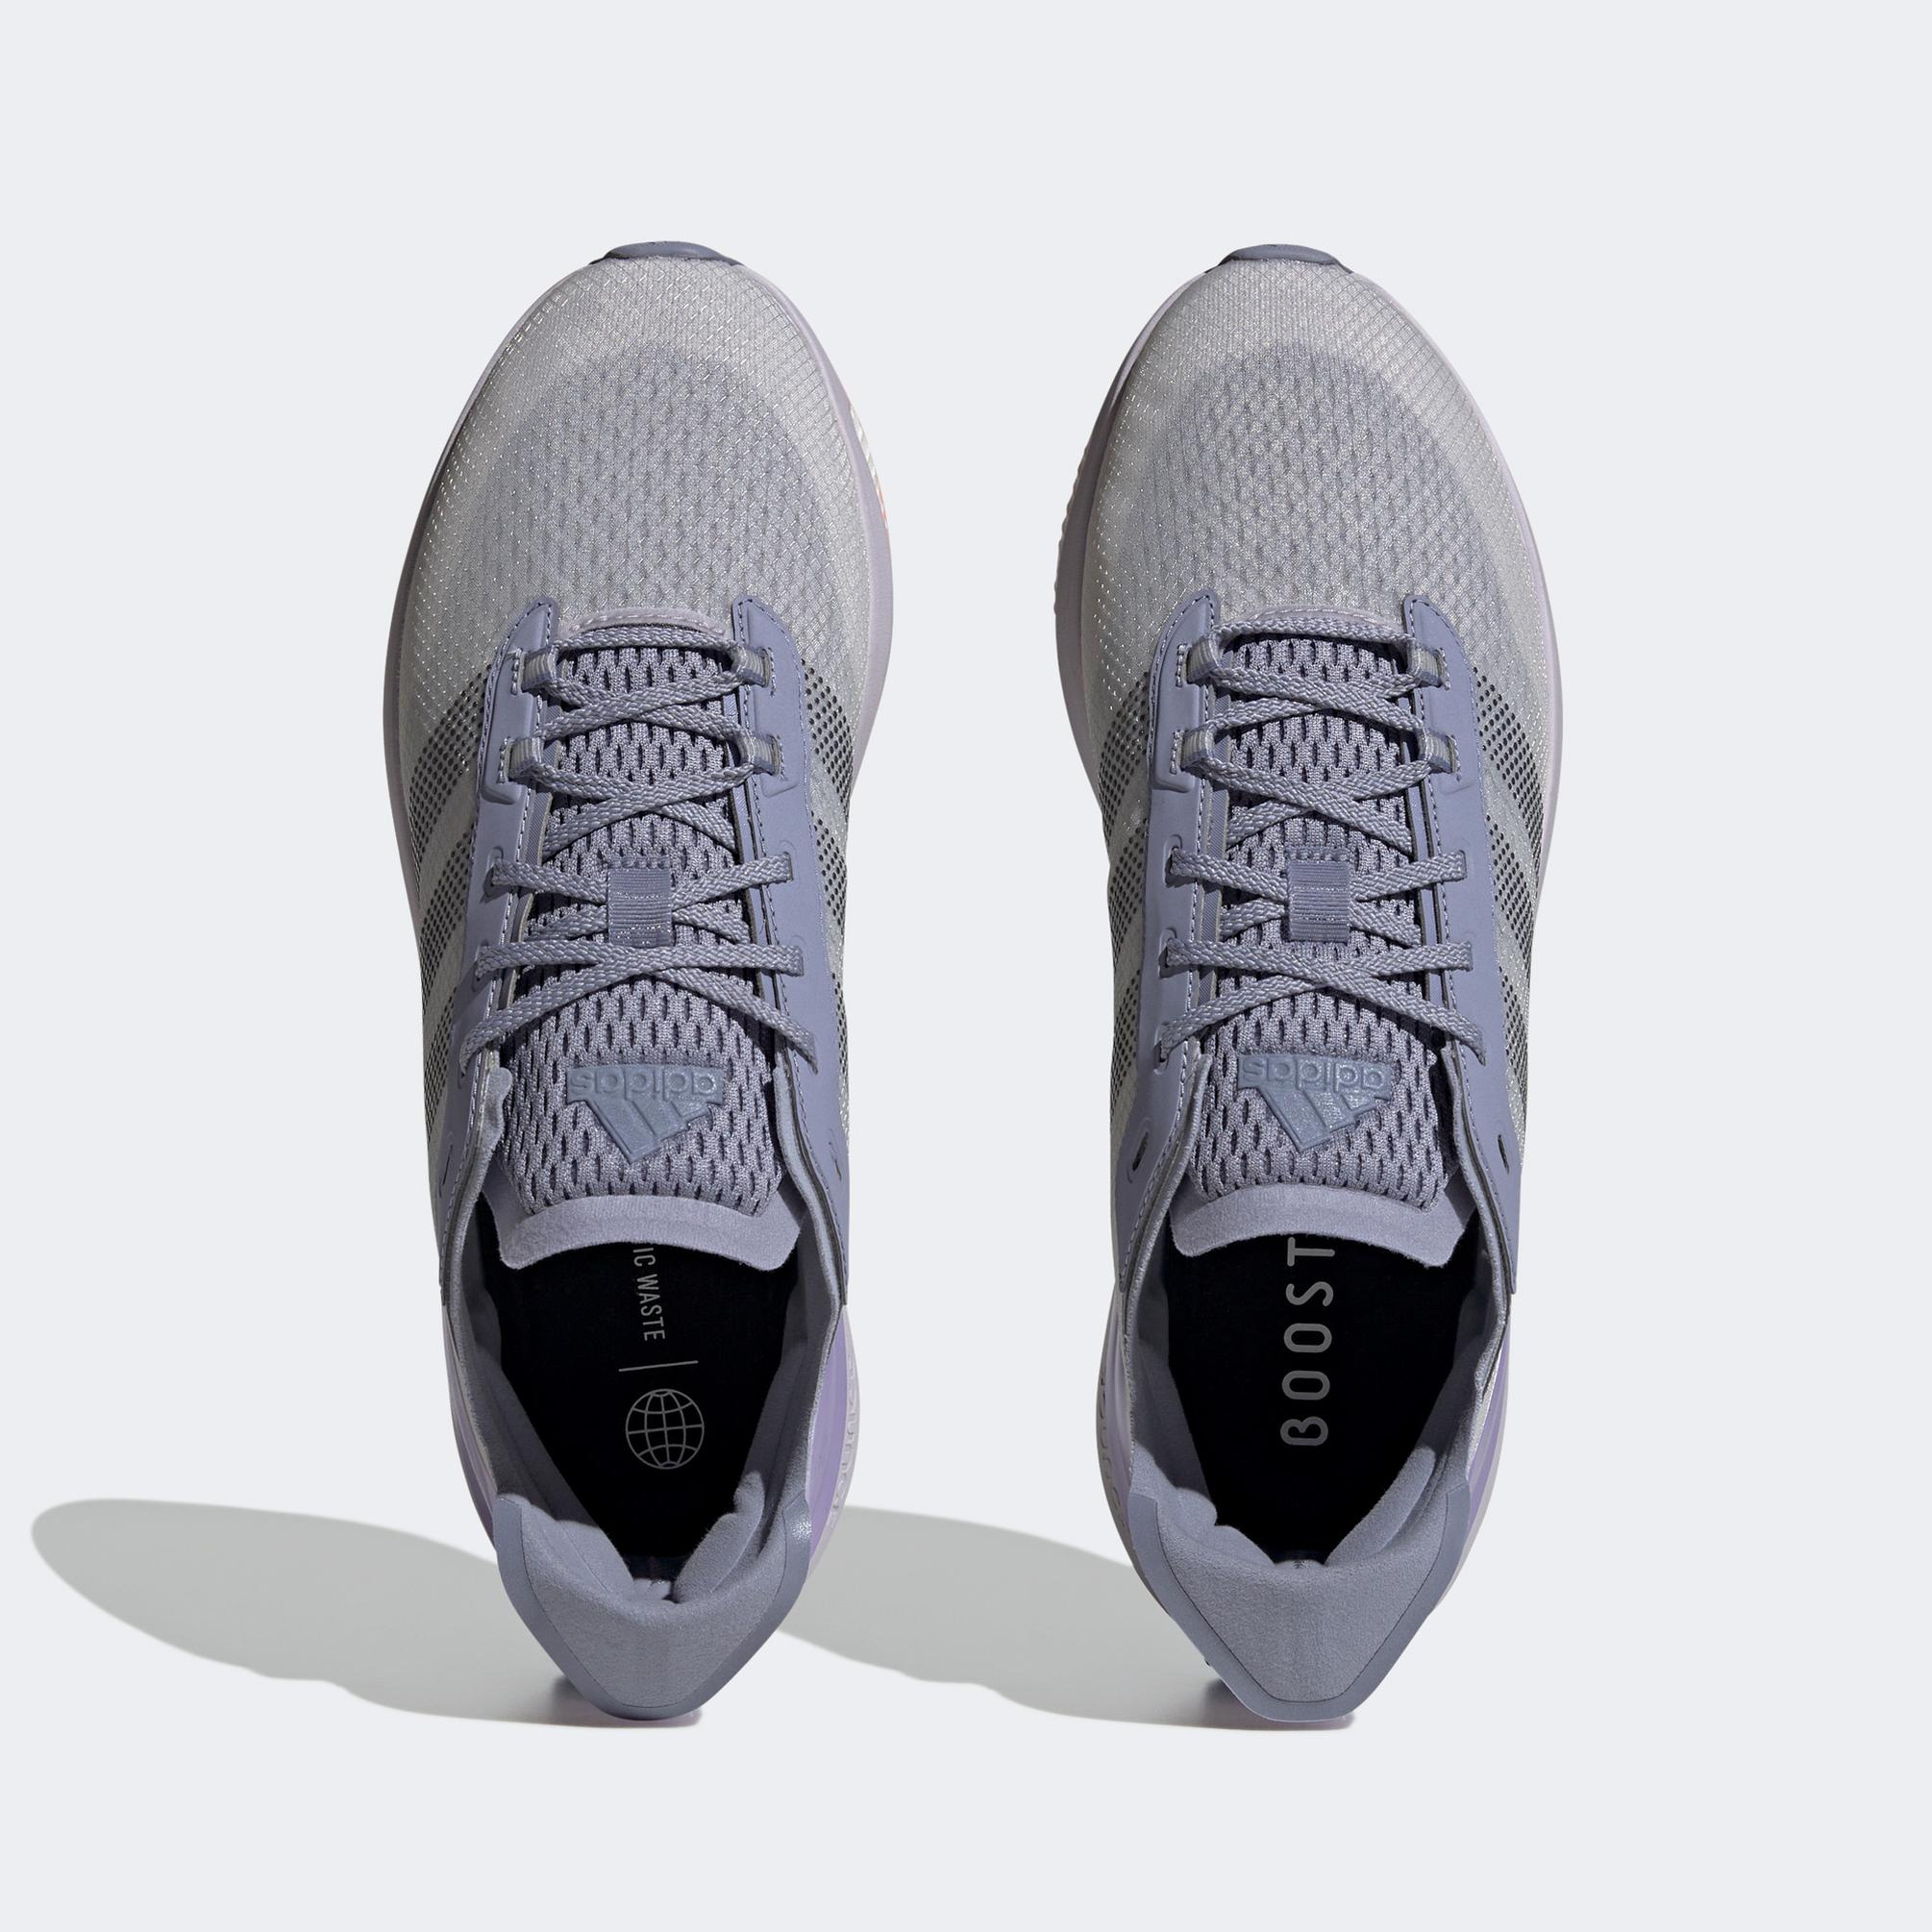  adidas Avryn Unisex Mor Spor Ayakkabı